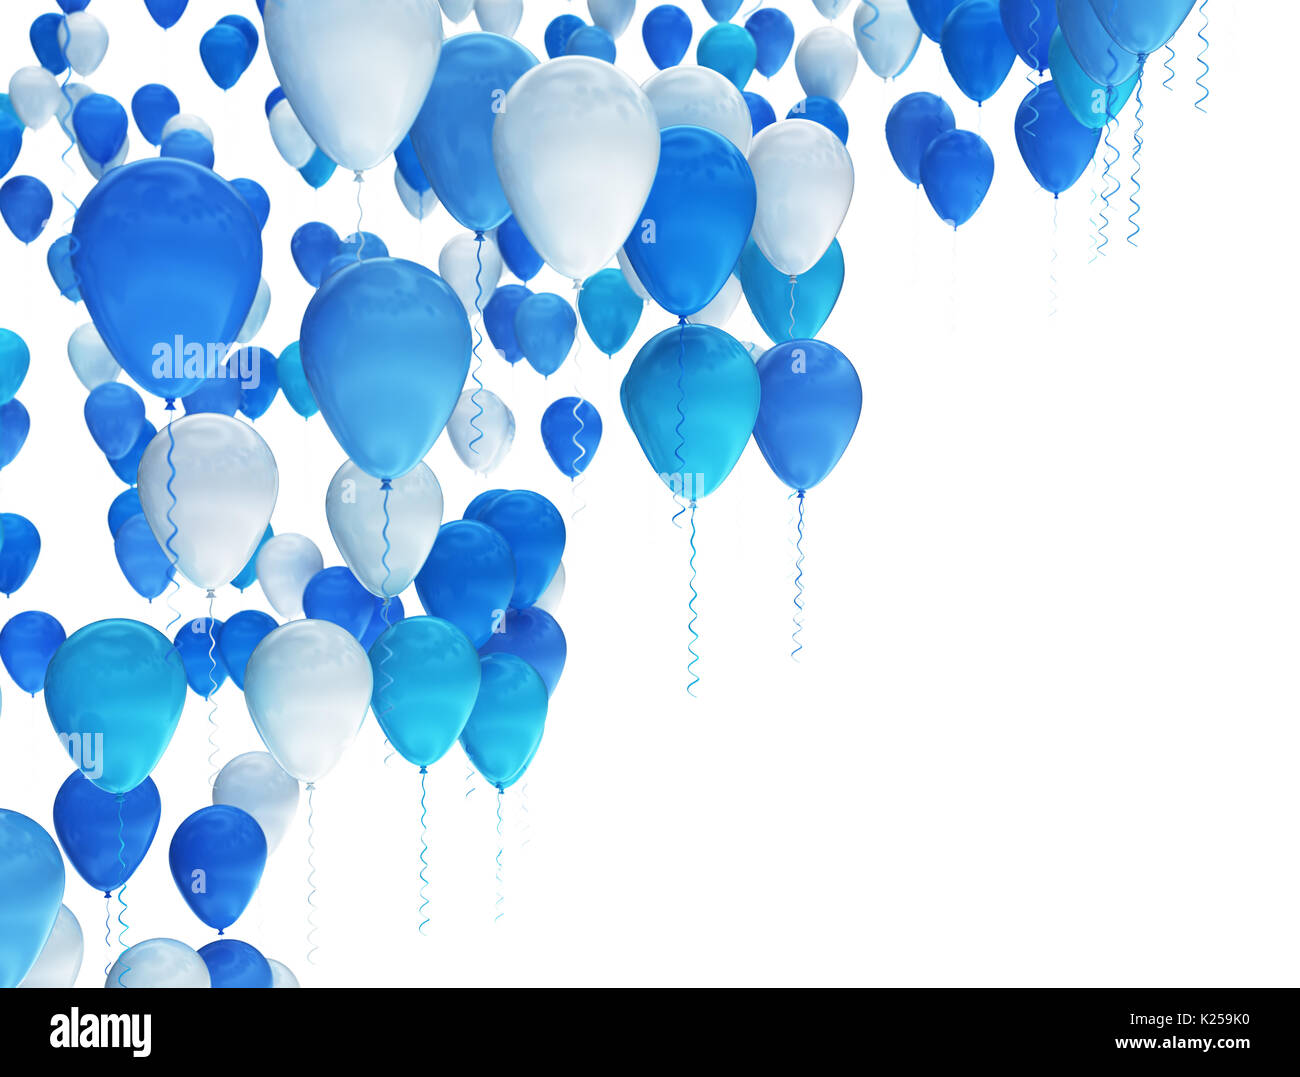 Blau-weiße Party Luftballons isoliert auf weißem Hintergrund Stockfoto